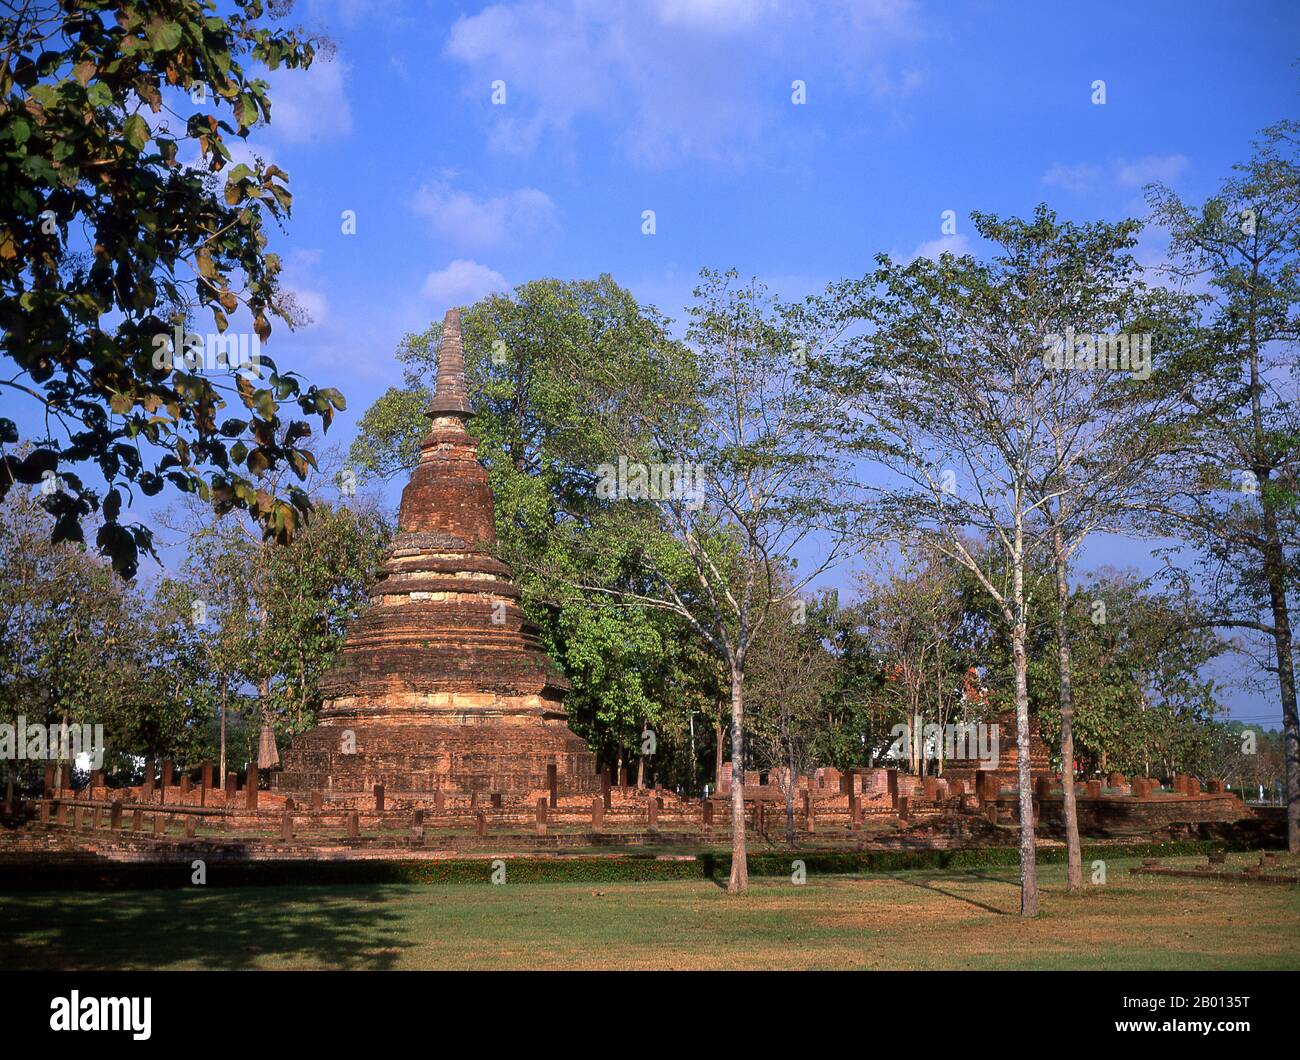 Thaïlande: Wat Phra That, Parc historique de Kamphaeng Phet. Le parc historique de Kamphaeng Phet, dans le centre de la Thaïlande, faisait autrefois partie du Royaume de Sukhothai qui a prospéré au XIIIe et au XIVe siècle. Le Royaume de Sukhothai était le premier des royaumes thaïlandais. Banque D'Images